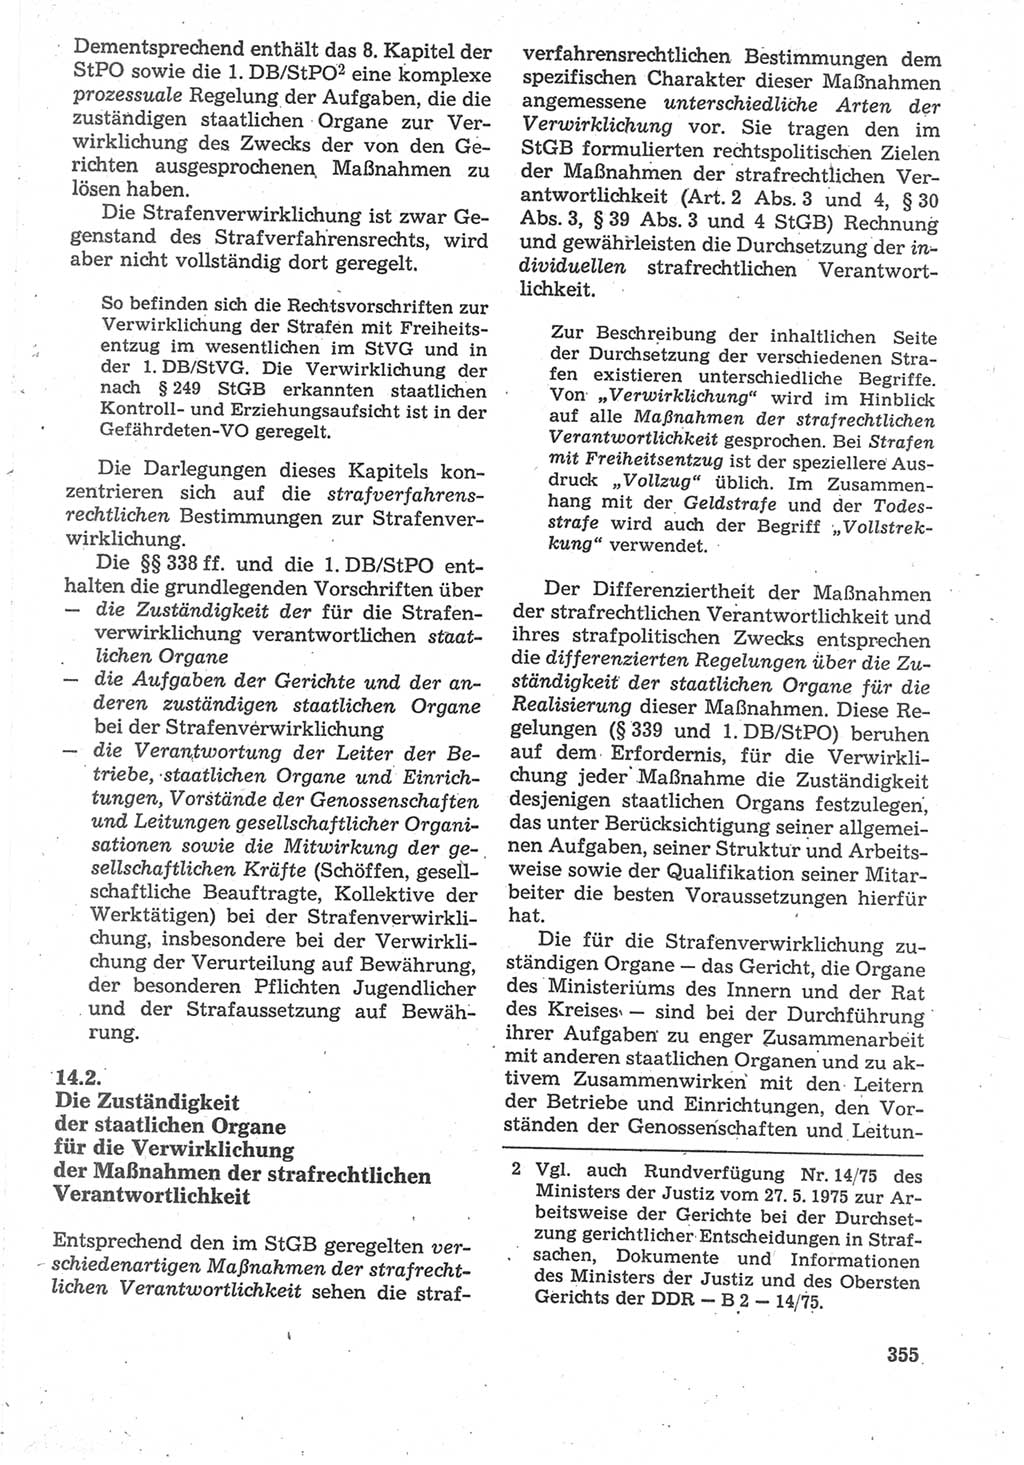 Strafverfahrensrecht [Deutsche Demokratische Republik (DDR)], Lehrbuch 1987, Seite 355 (Strafverf.-R. DDR Lb. 1987, S. 355)